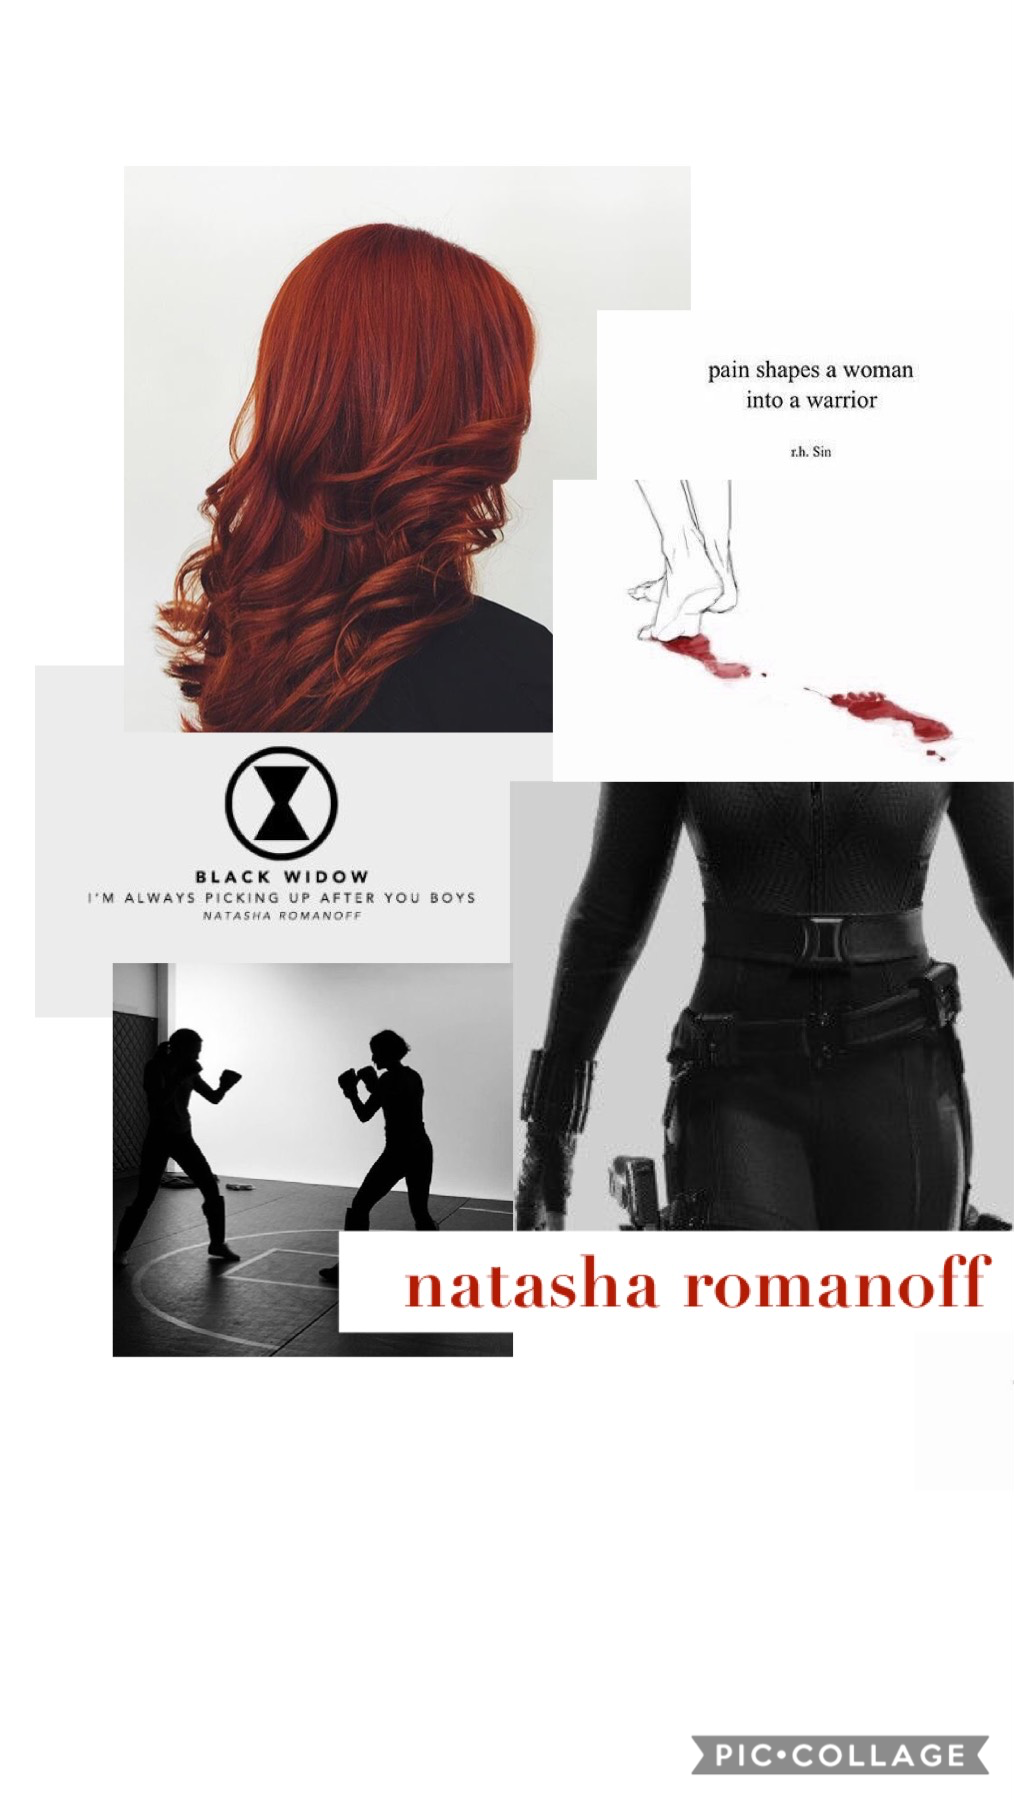 natasha romanoff•black widow

5/12/19